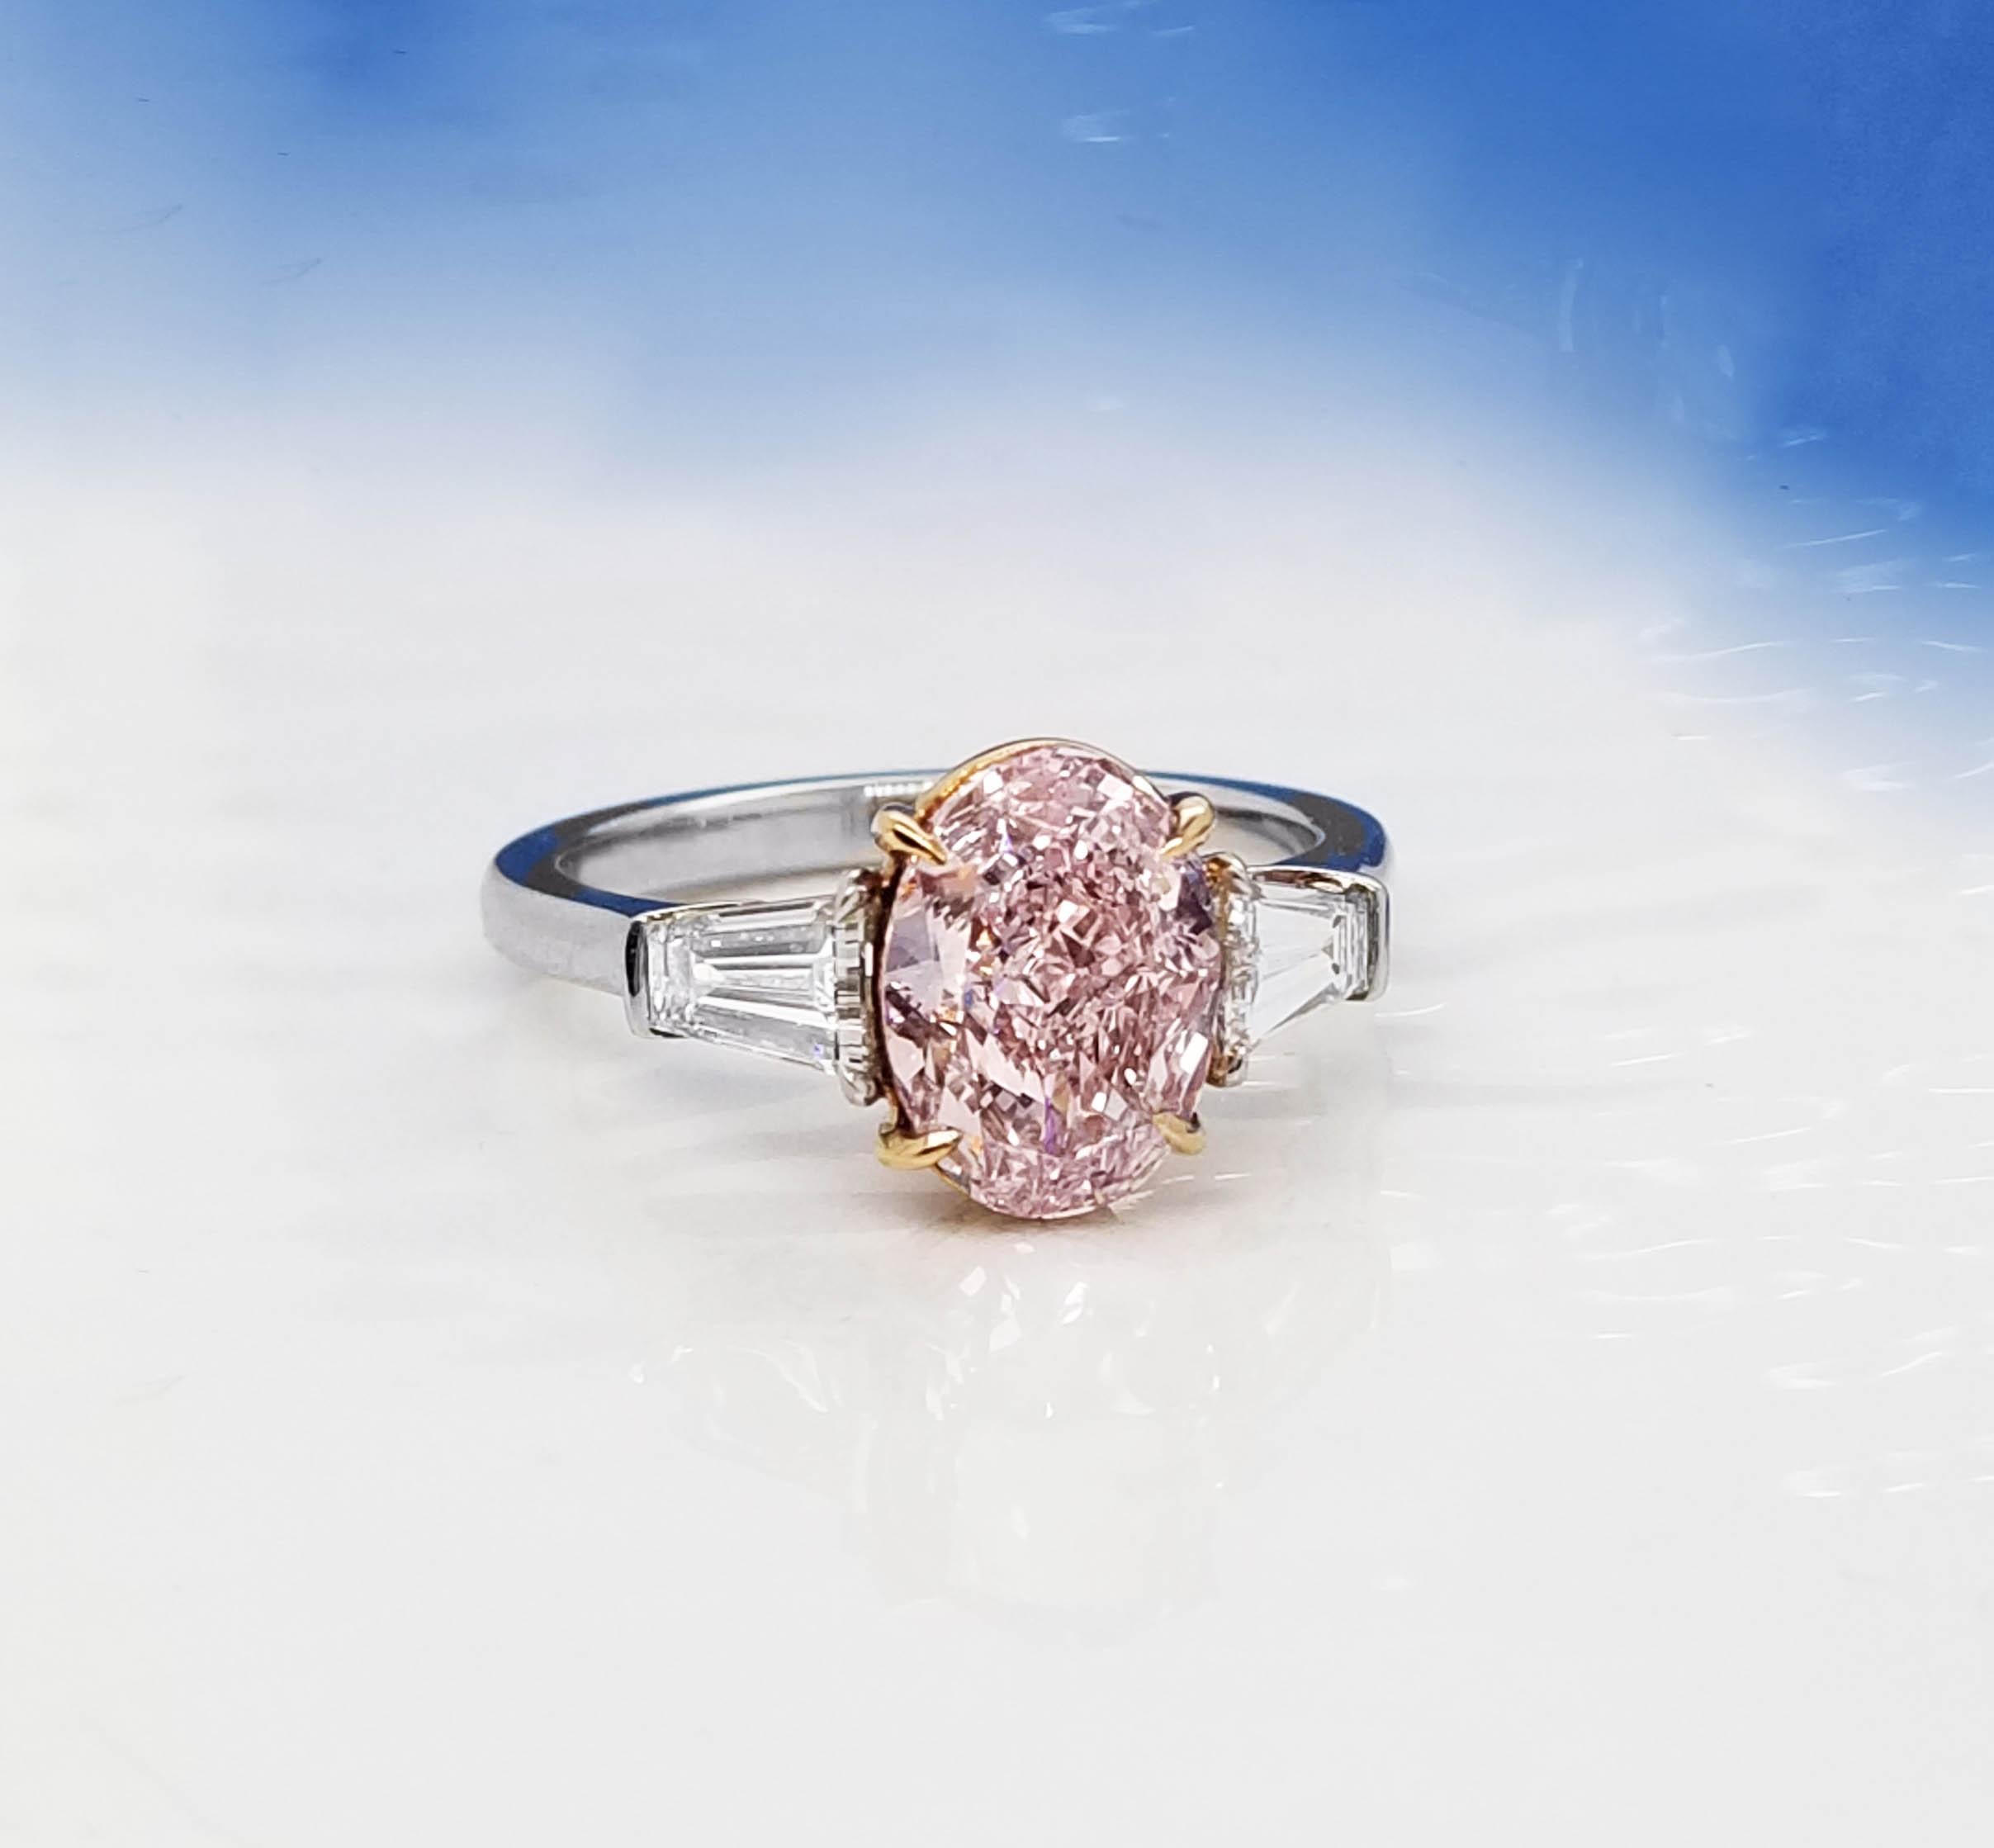 Provenant de SCARSELLI, une maison de diamants de couleur fantaisie de renommée mondiale, ce rare diamant ovale de couleur rose pourpre 2+ est de pureté VVS1 et est flanqué de baguettes de diamants blancs en platine pour un look classique qui plaira